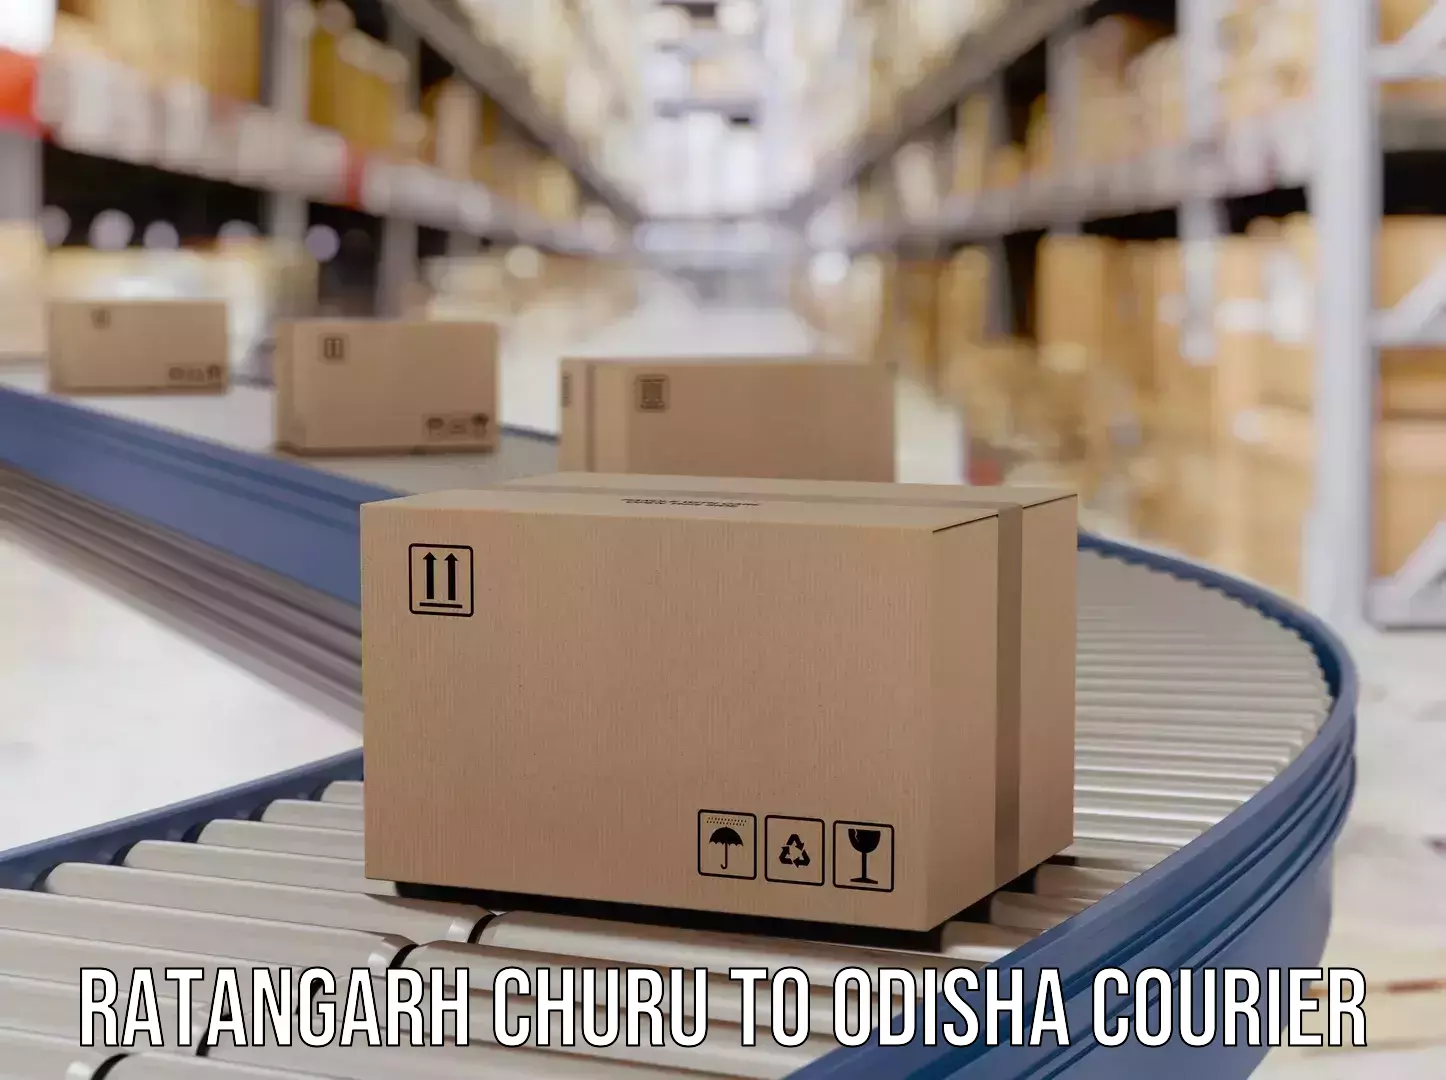 Courier service partnerships Ratangarh Churu to Jaipatna